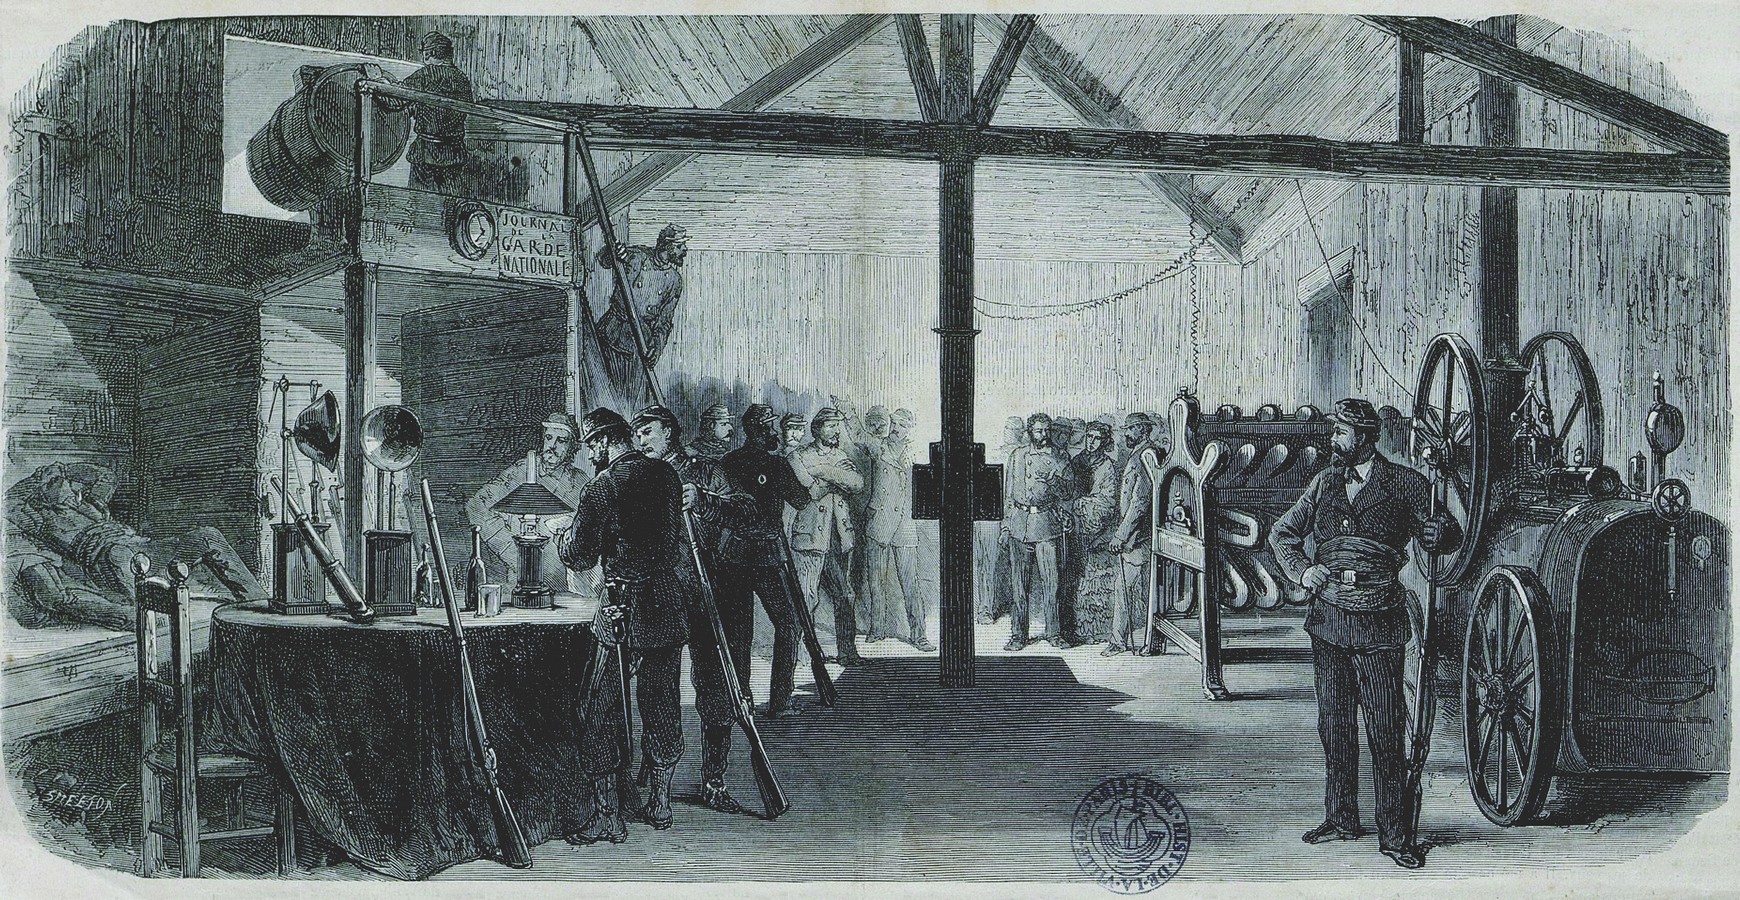 Commune de Paris 1871 - Le phare de Montmartre. (Source : Bibliothèque historique de la Ville de Paris)